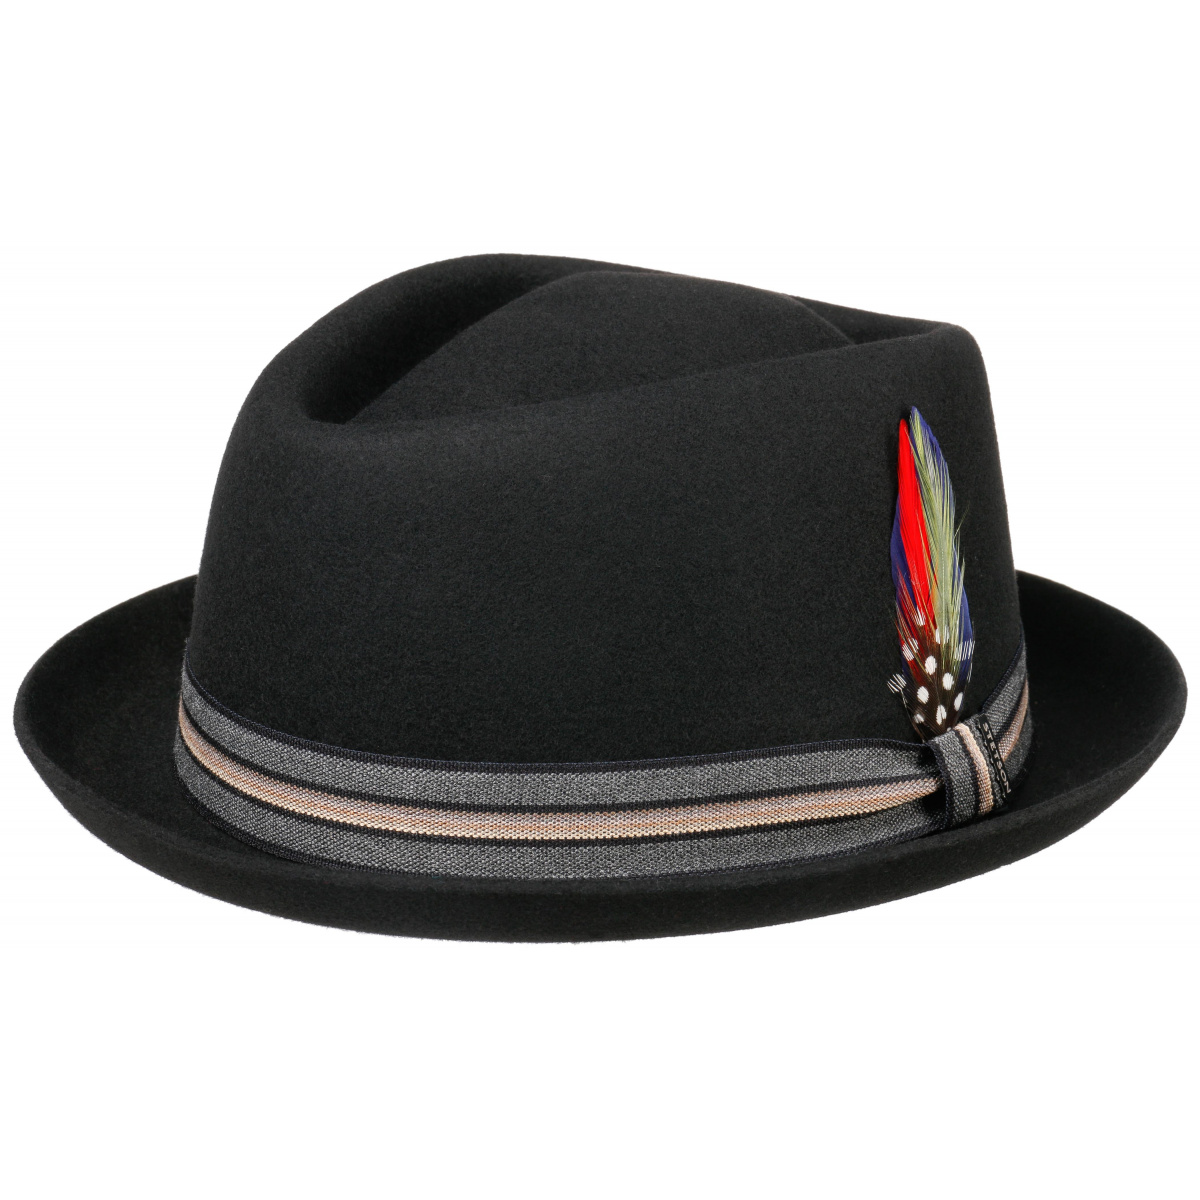 Le Falio Black trilby hat - Stetson